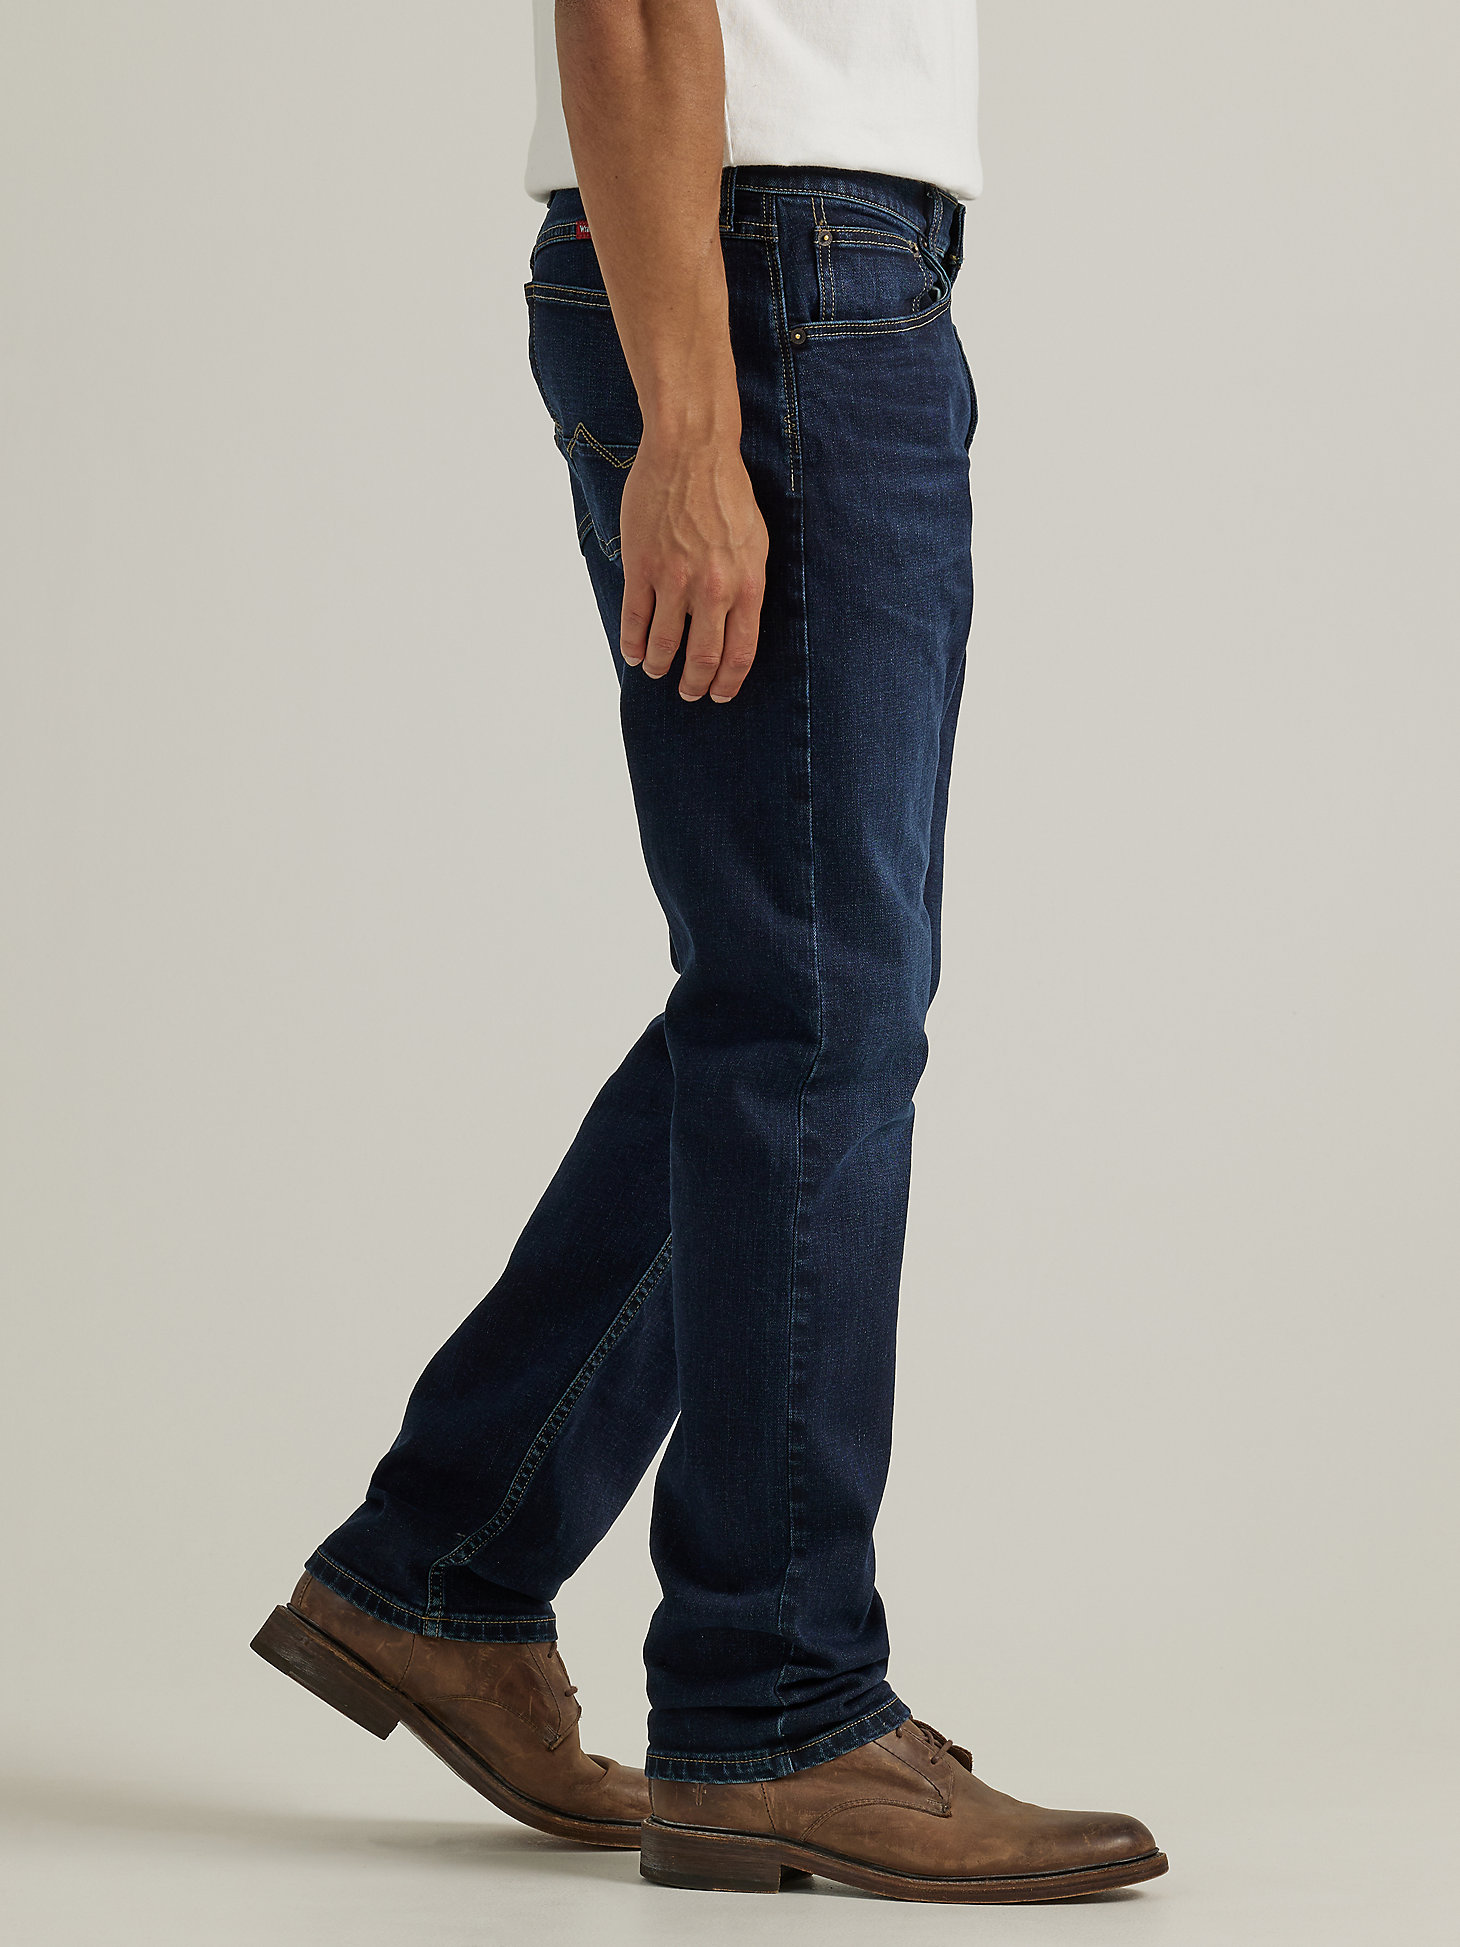 Men's Wrangler® Five Star Premium Athletic Fit Jean in Camden alternative view 6